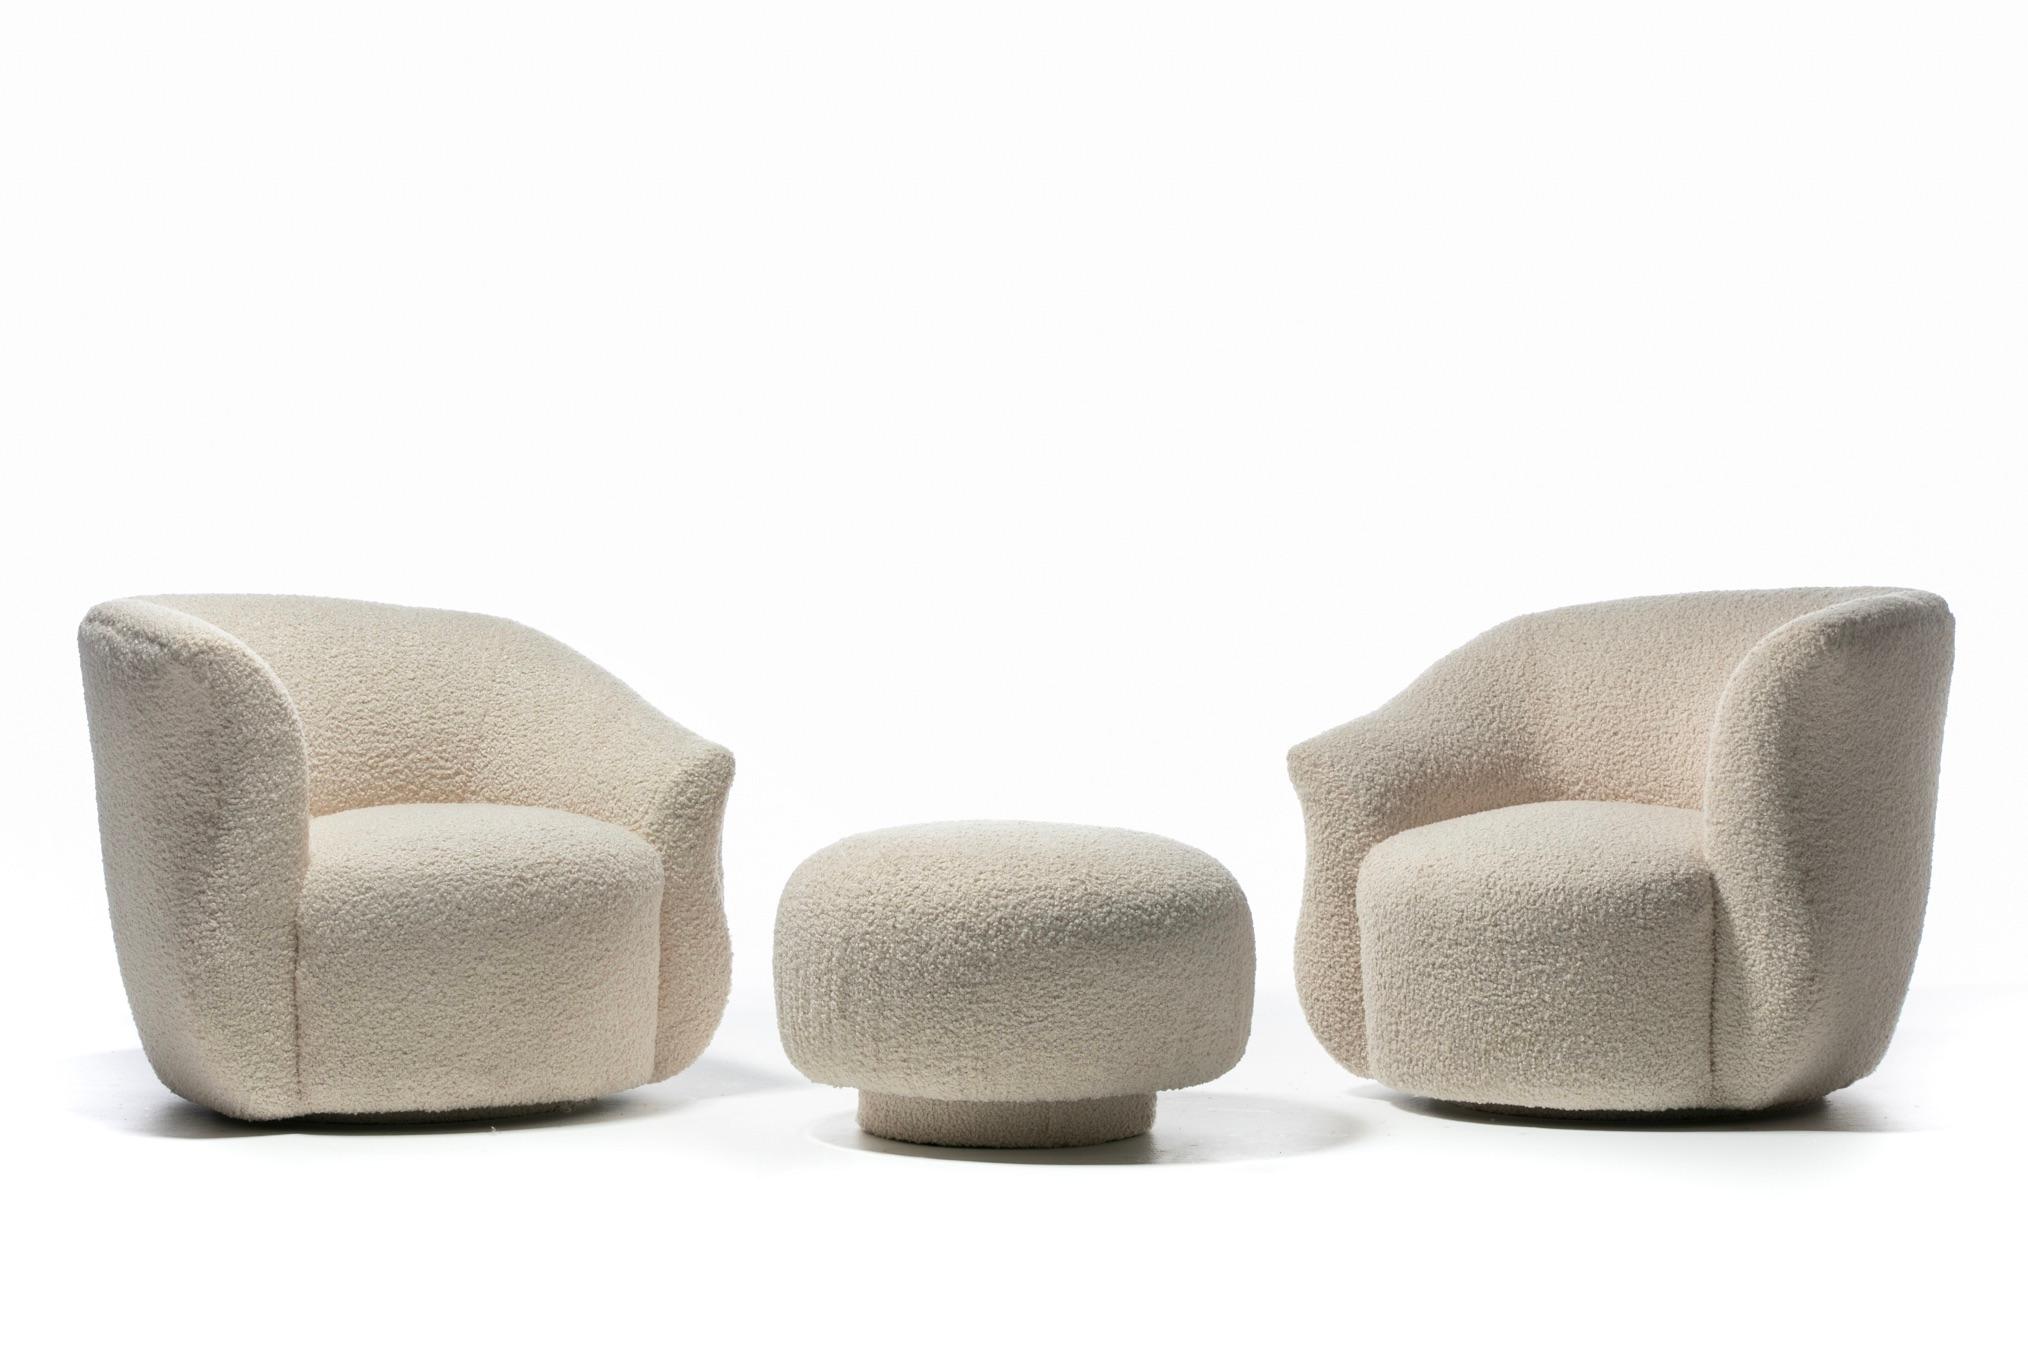 Magnifique paire de chaises pivotantes post-moderne et ottoman à plateau pivotant en forme de champignon, nouvellement tapissés par des professionnels en bouclé blanc ivoire doux. Le dossier en forme de tonneau et le large siège rembourré vous